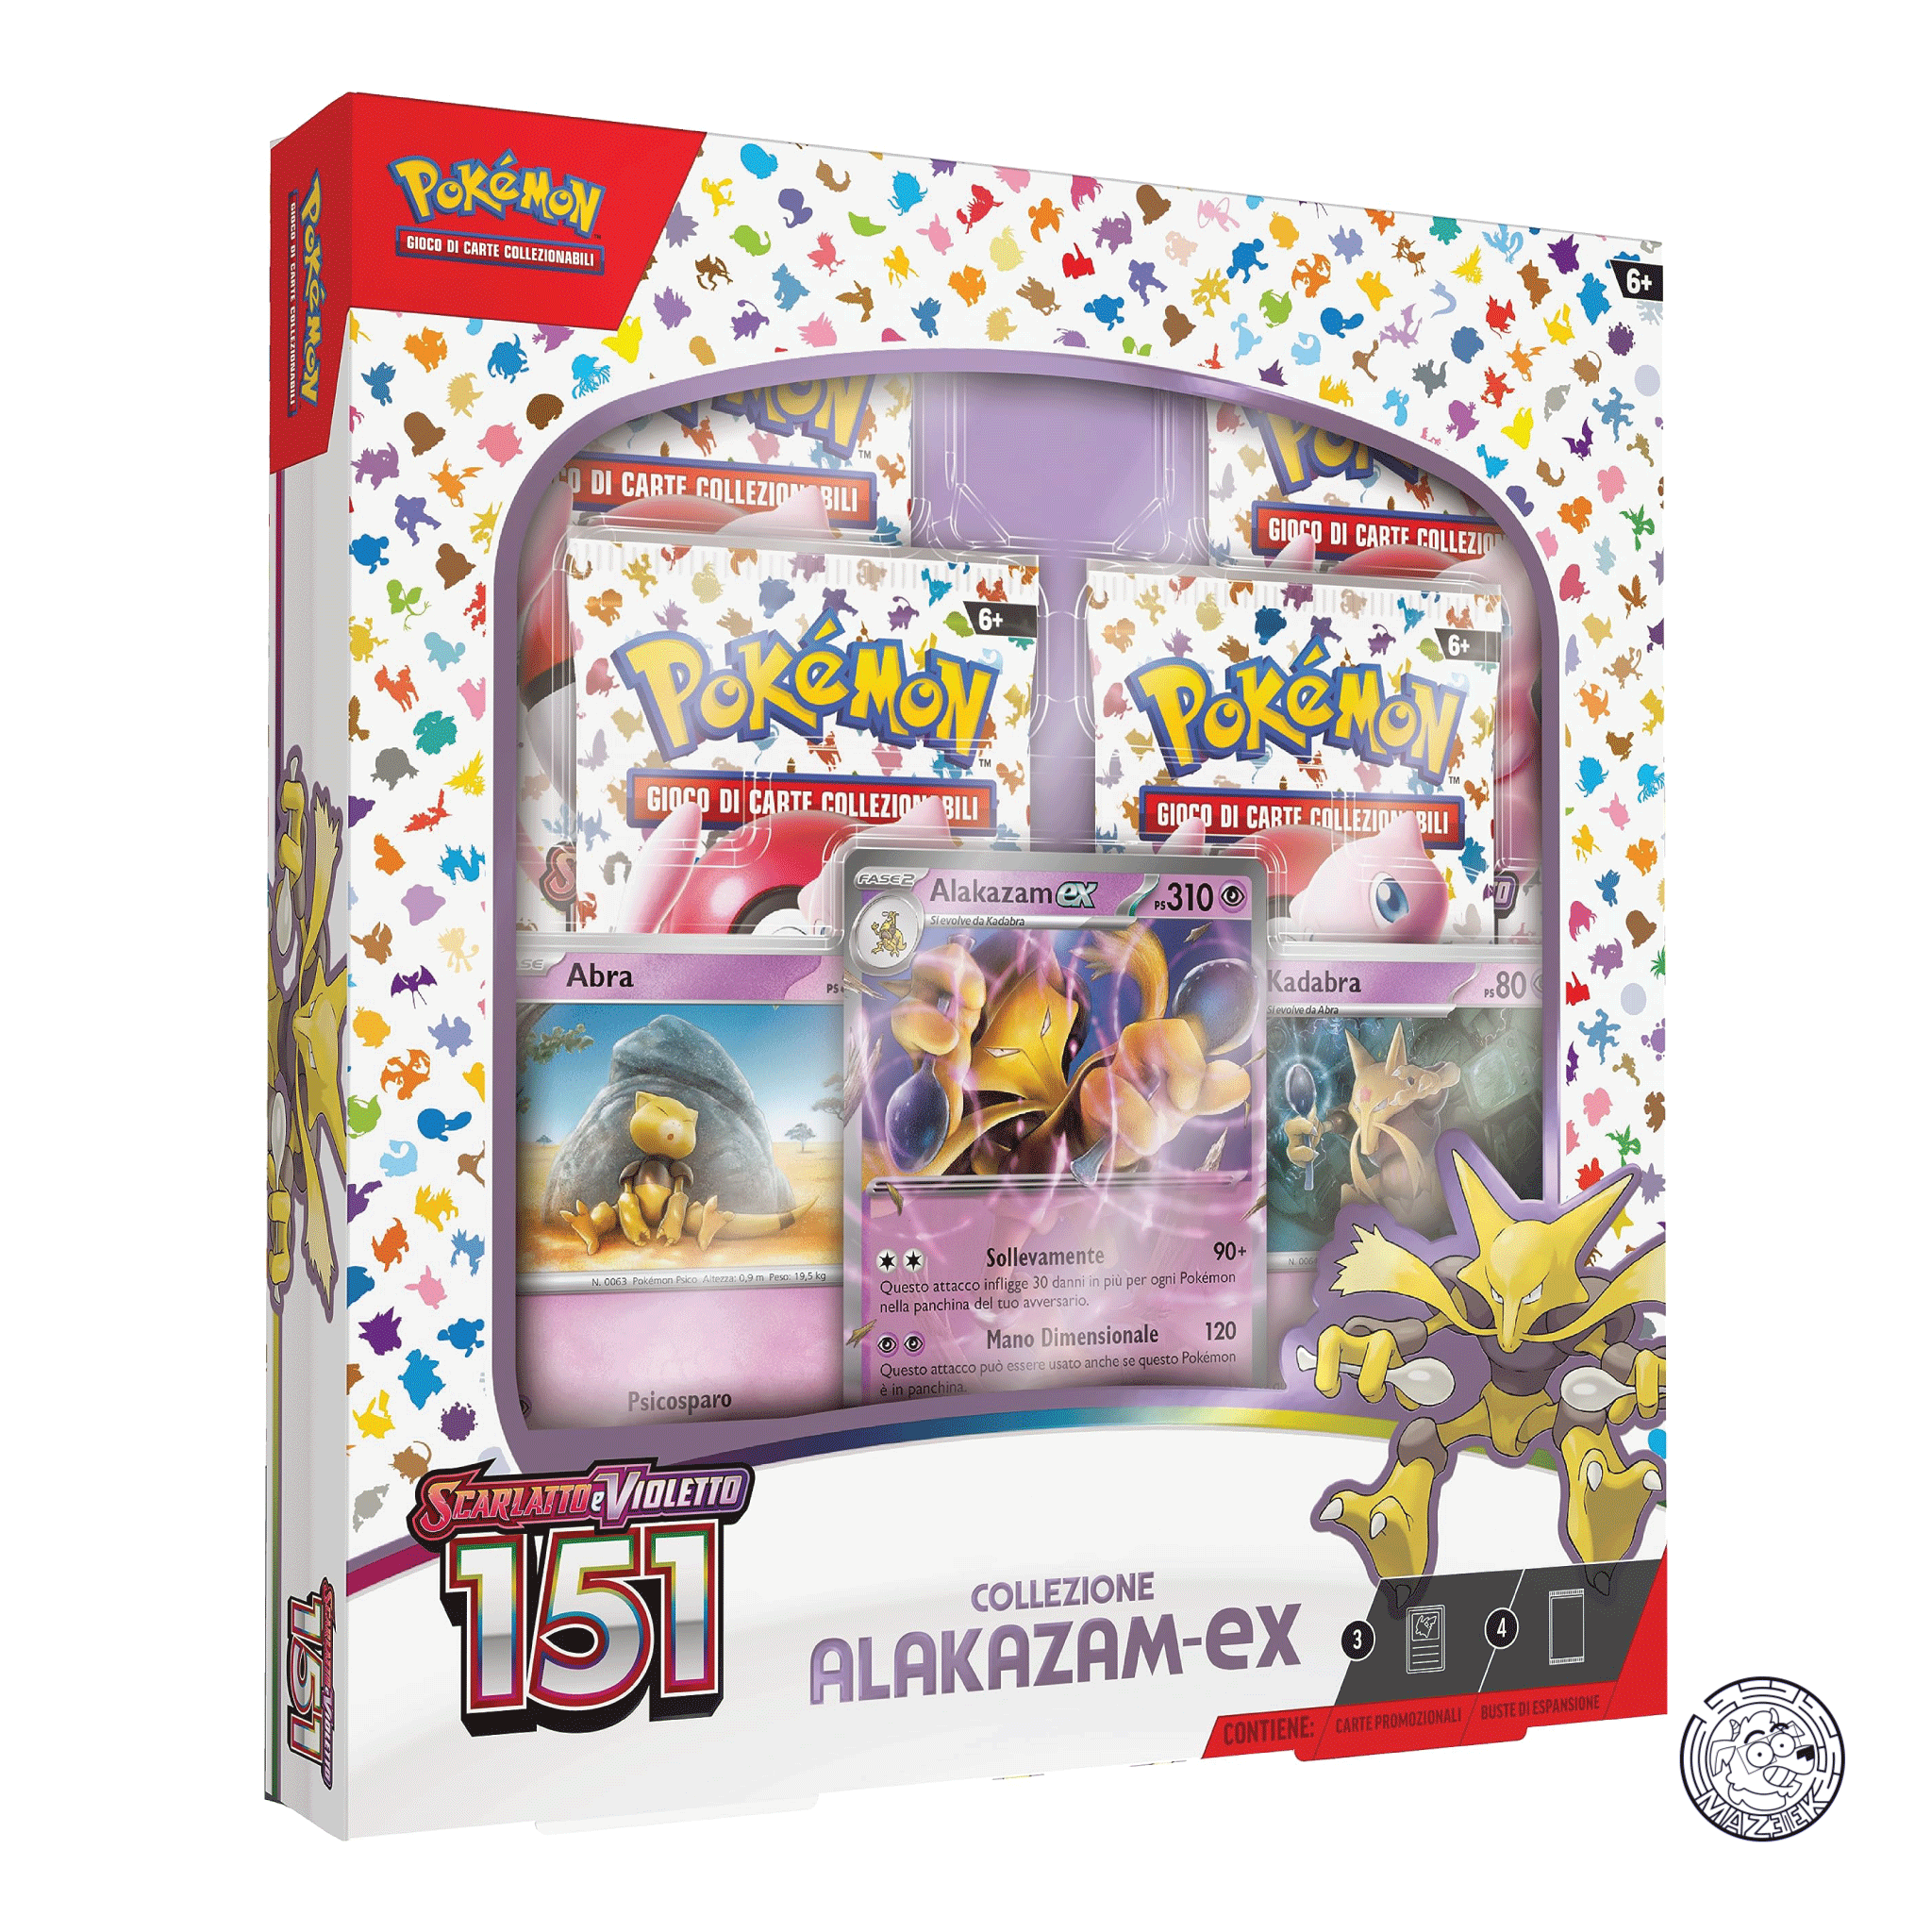 Pokemon! BOX: Scarlatto e Violetto - Collezione Alakazam-ex 151 ITA